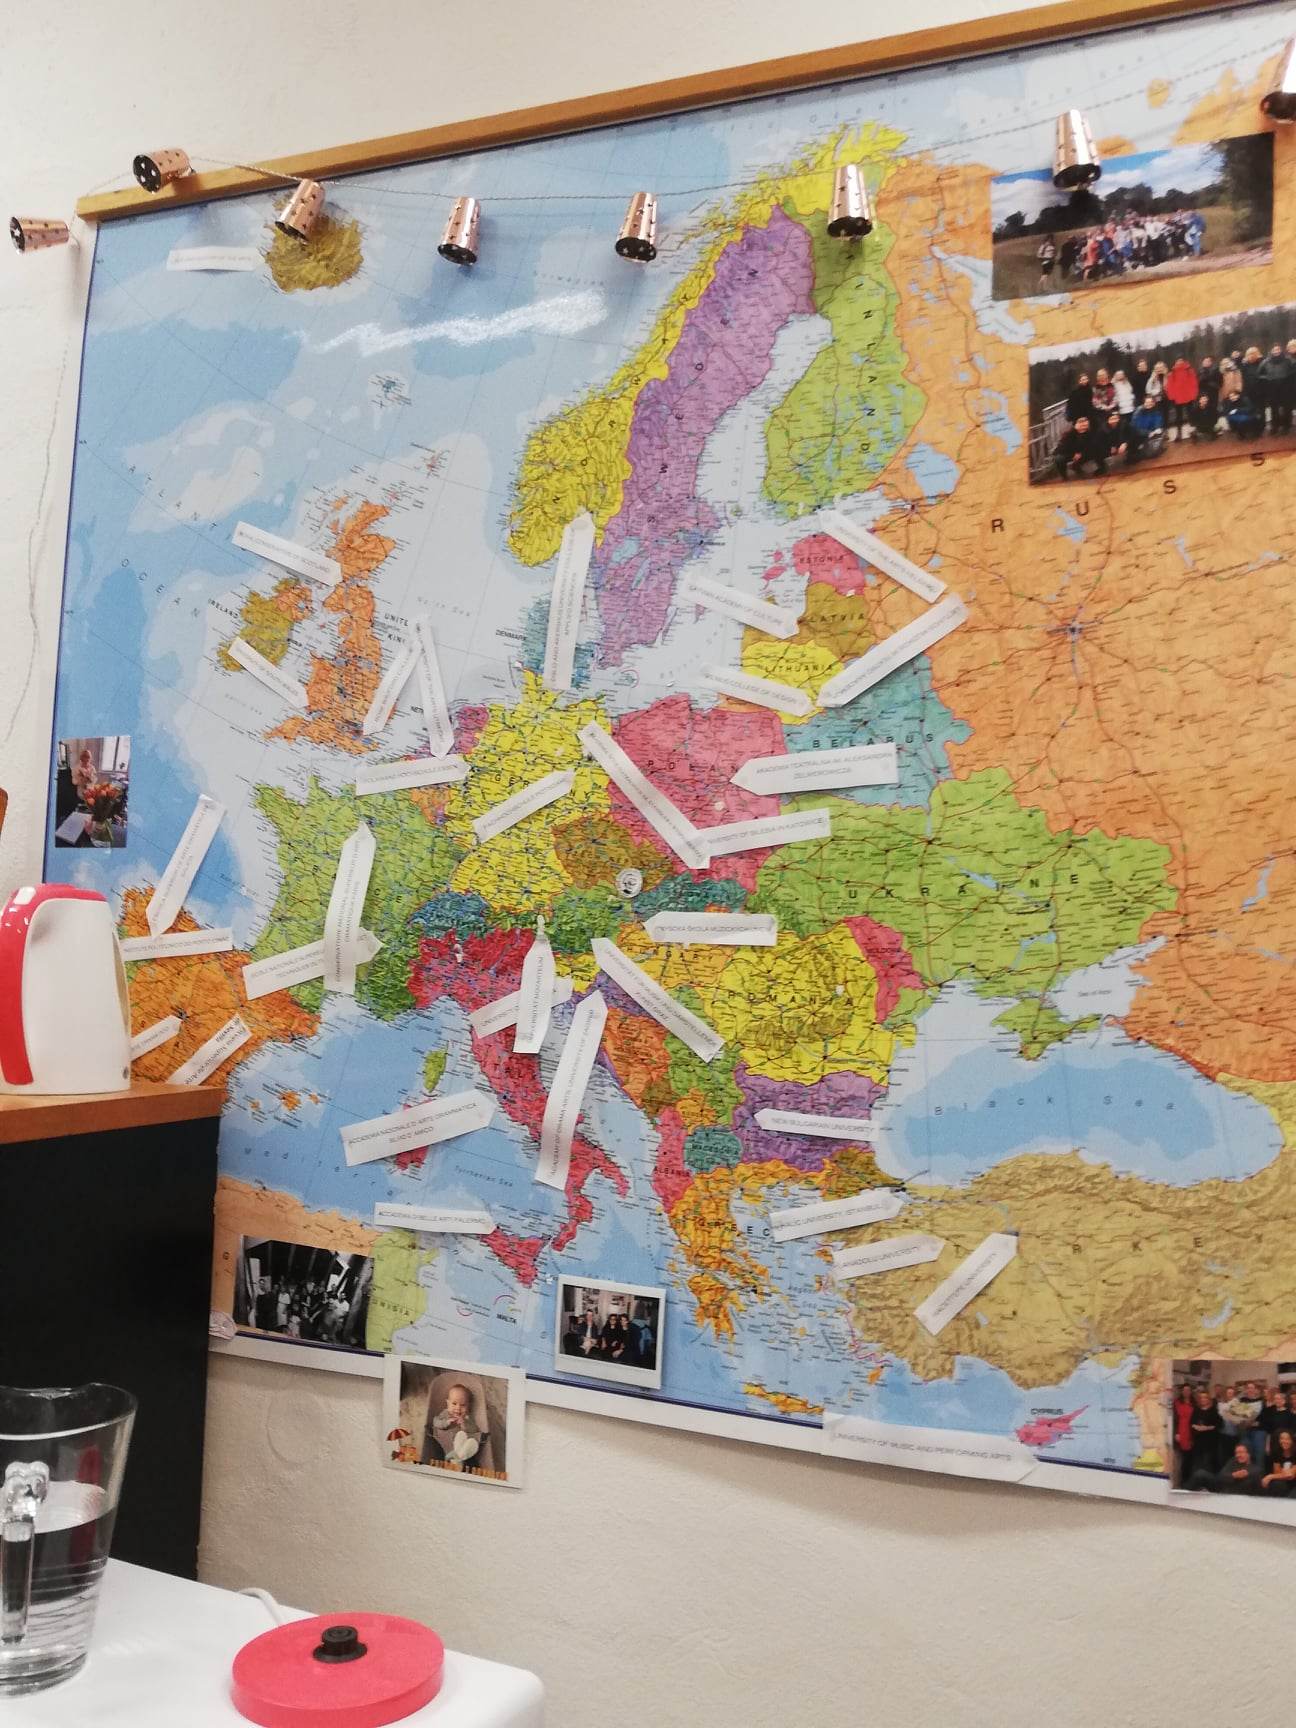 Ścienna mapa Europy z pinezkami oznaczającymi różne lokalizacje.